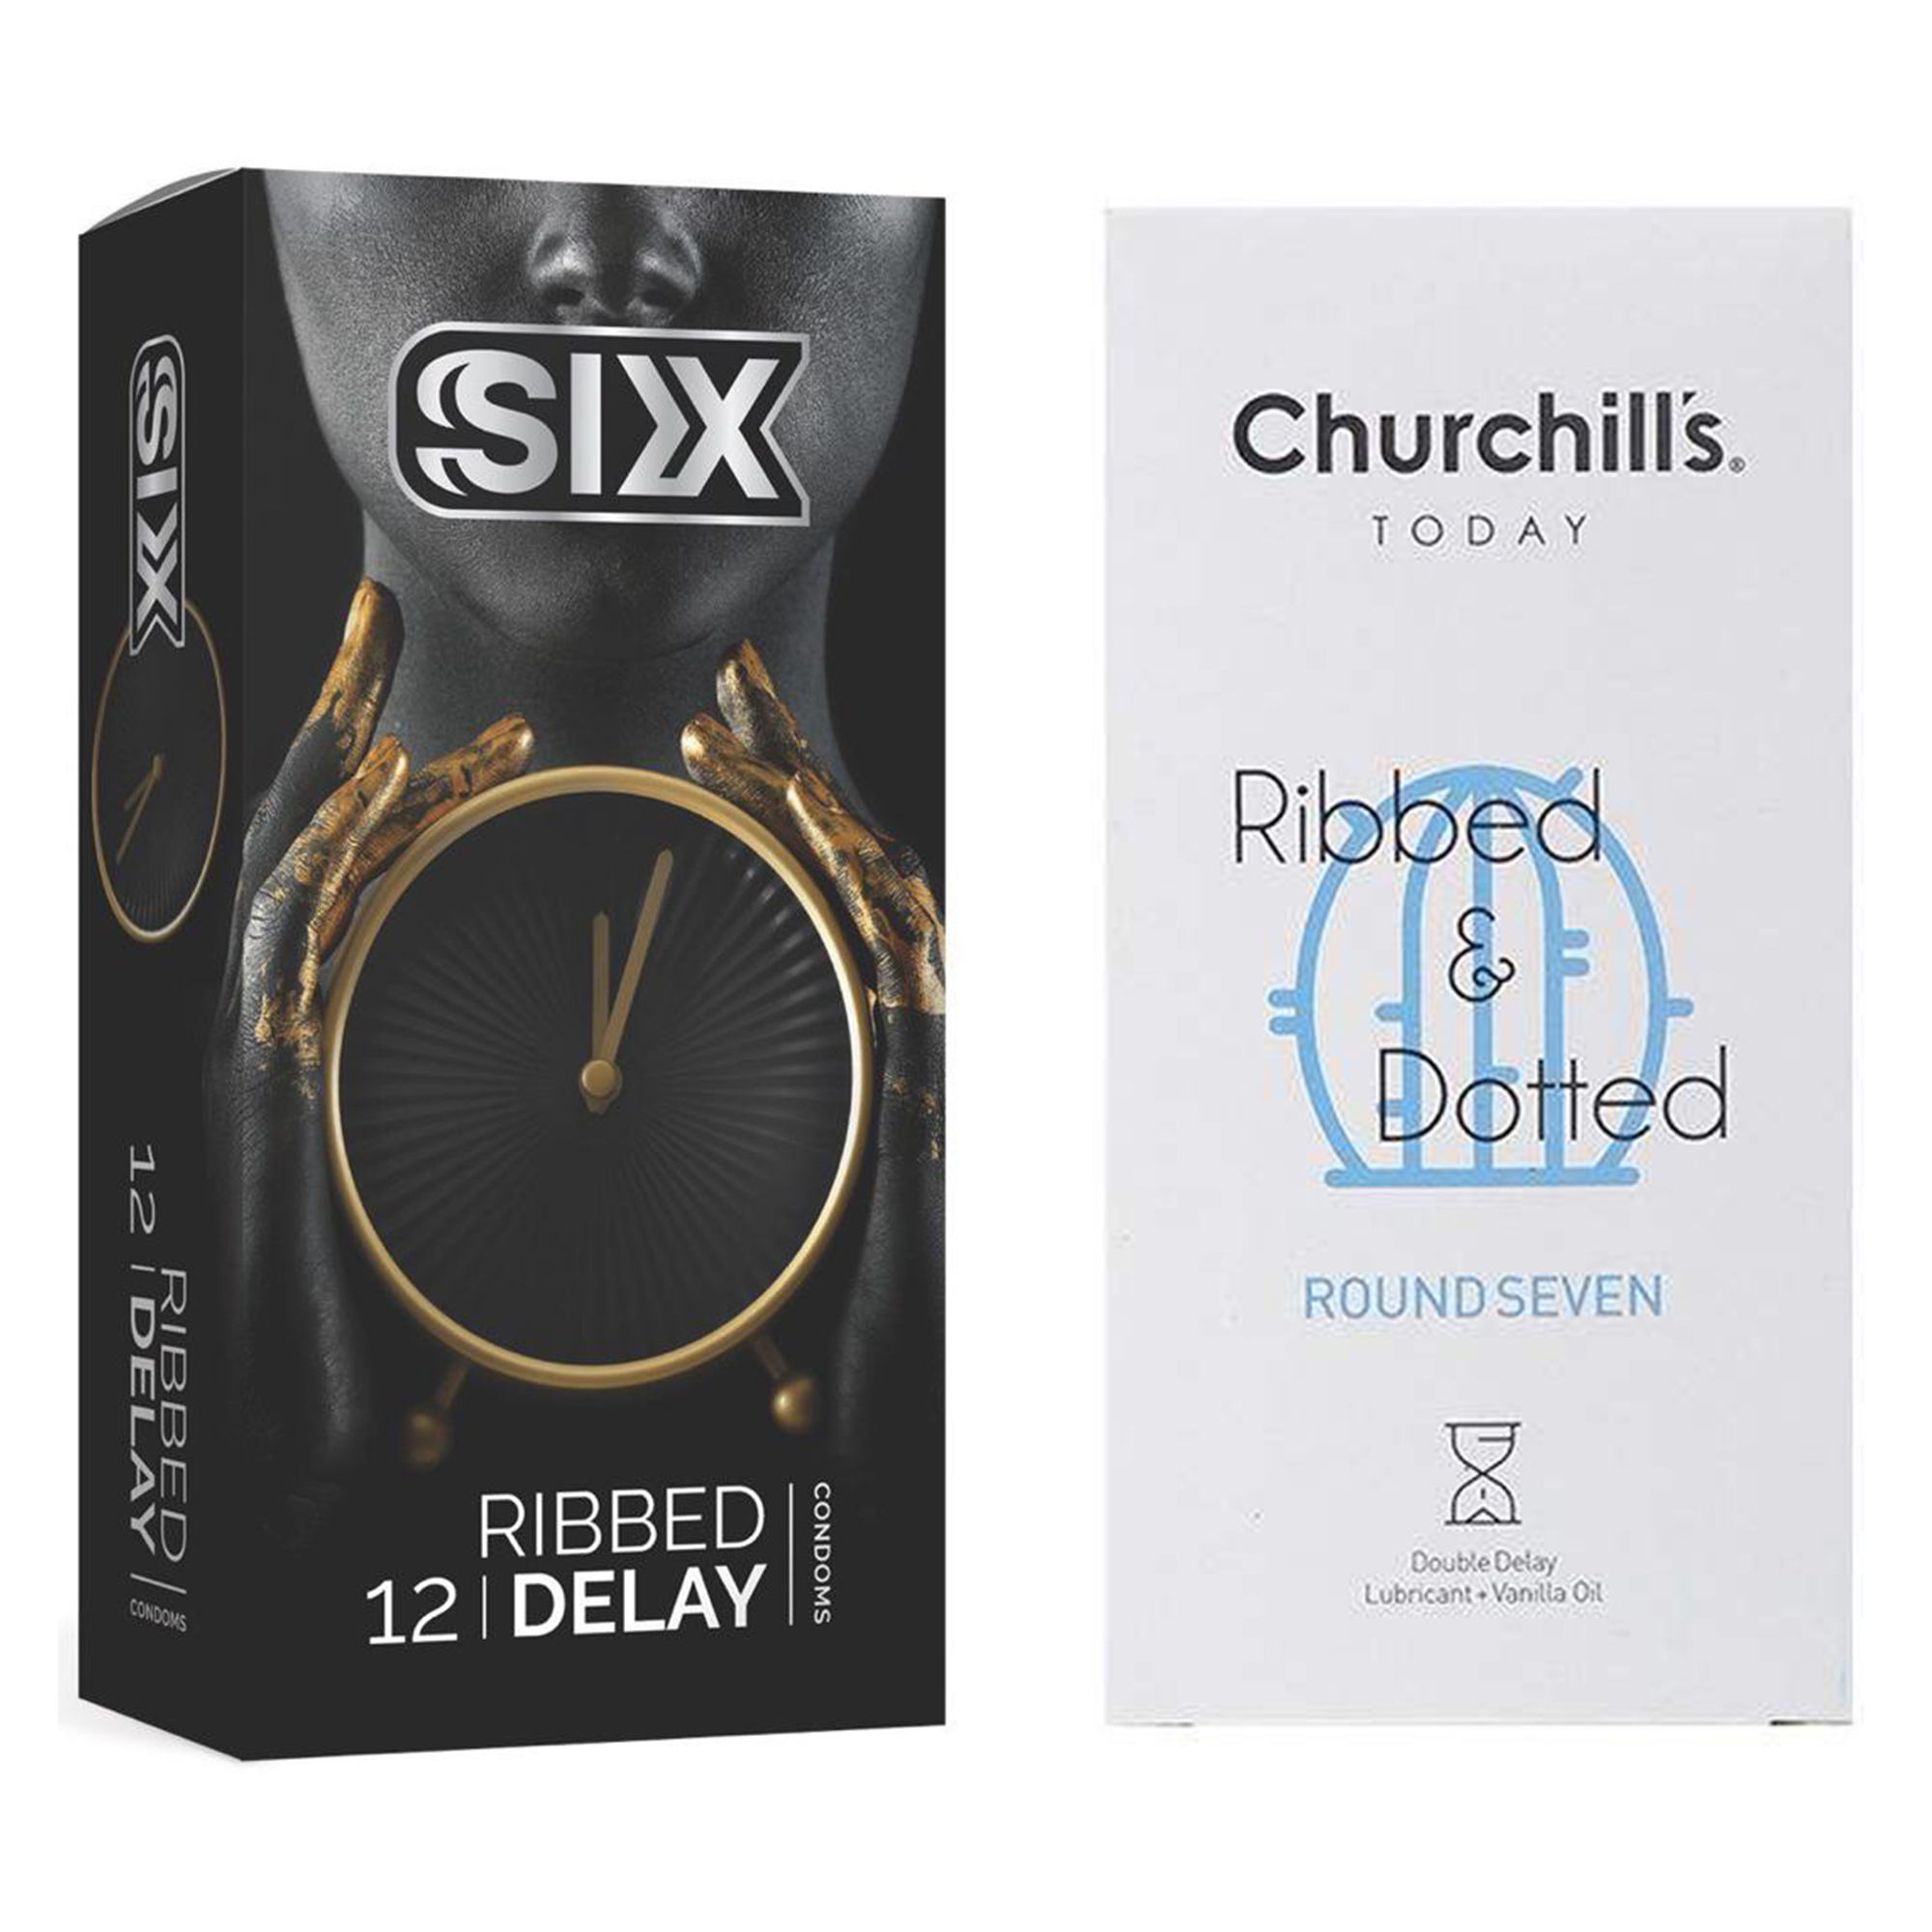 کاندوم چرچیلز مدل Round Seven بسته 12 عددی به همراه کاندوم سیکس مدل تاخیری شیاردار بسته 12 عددی -  - 2